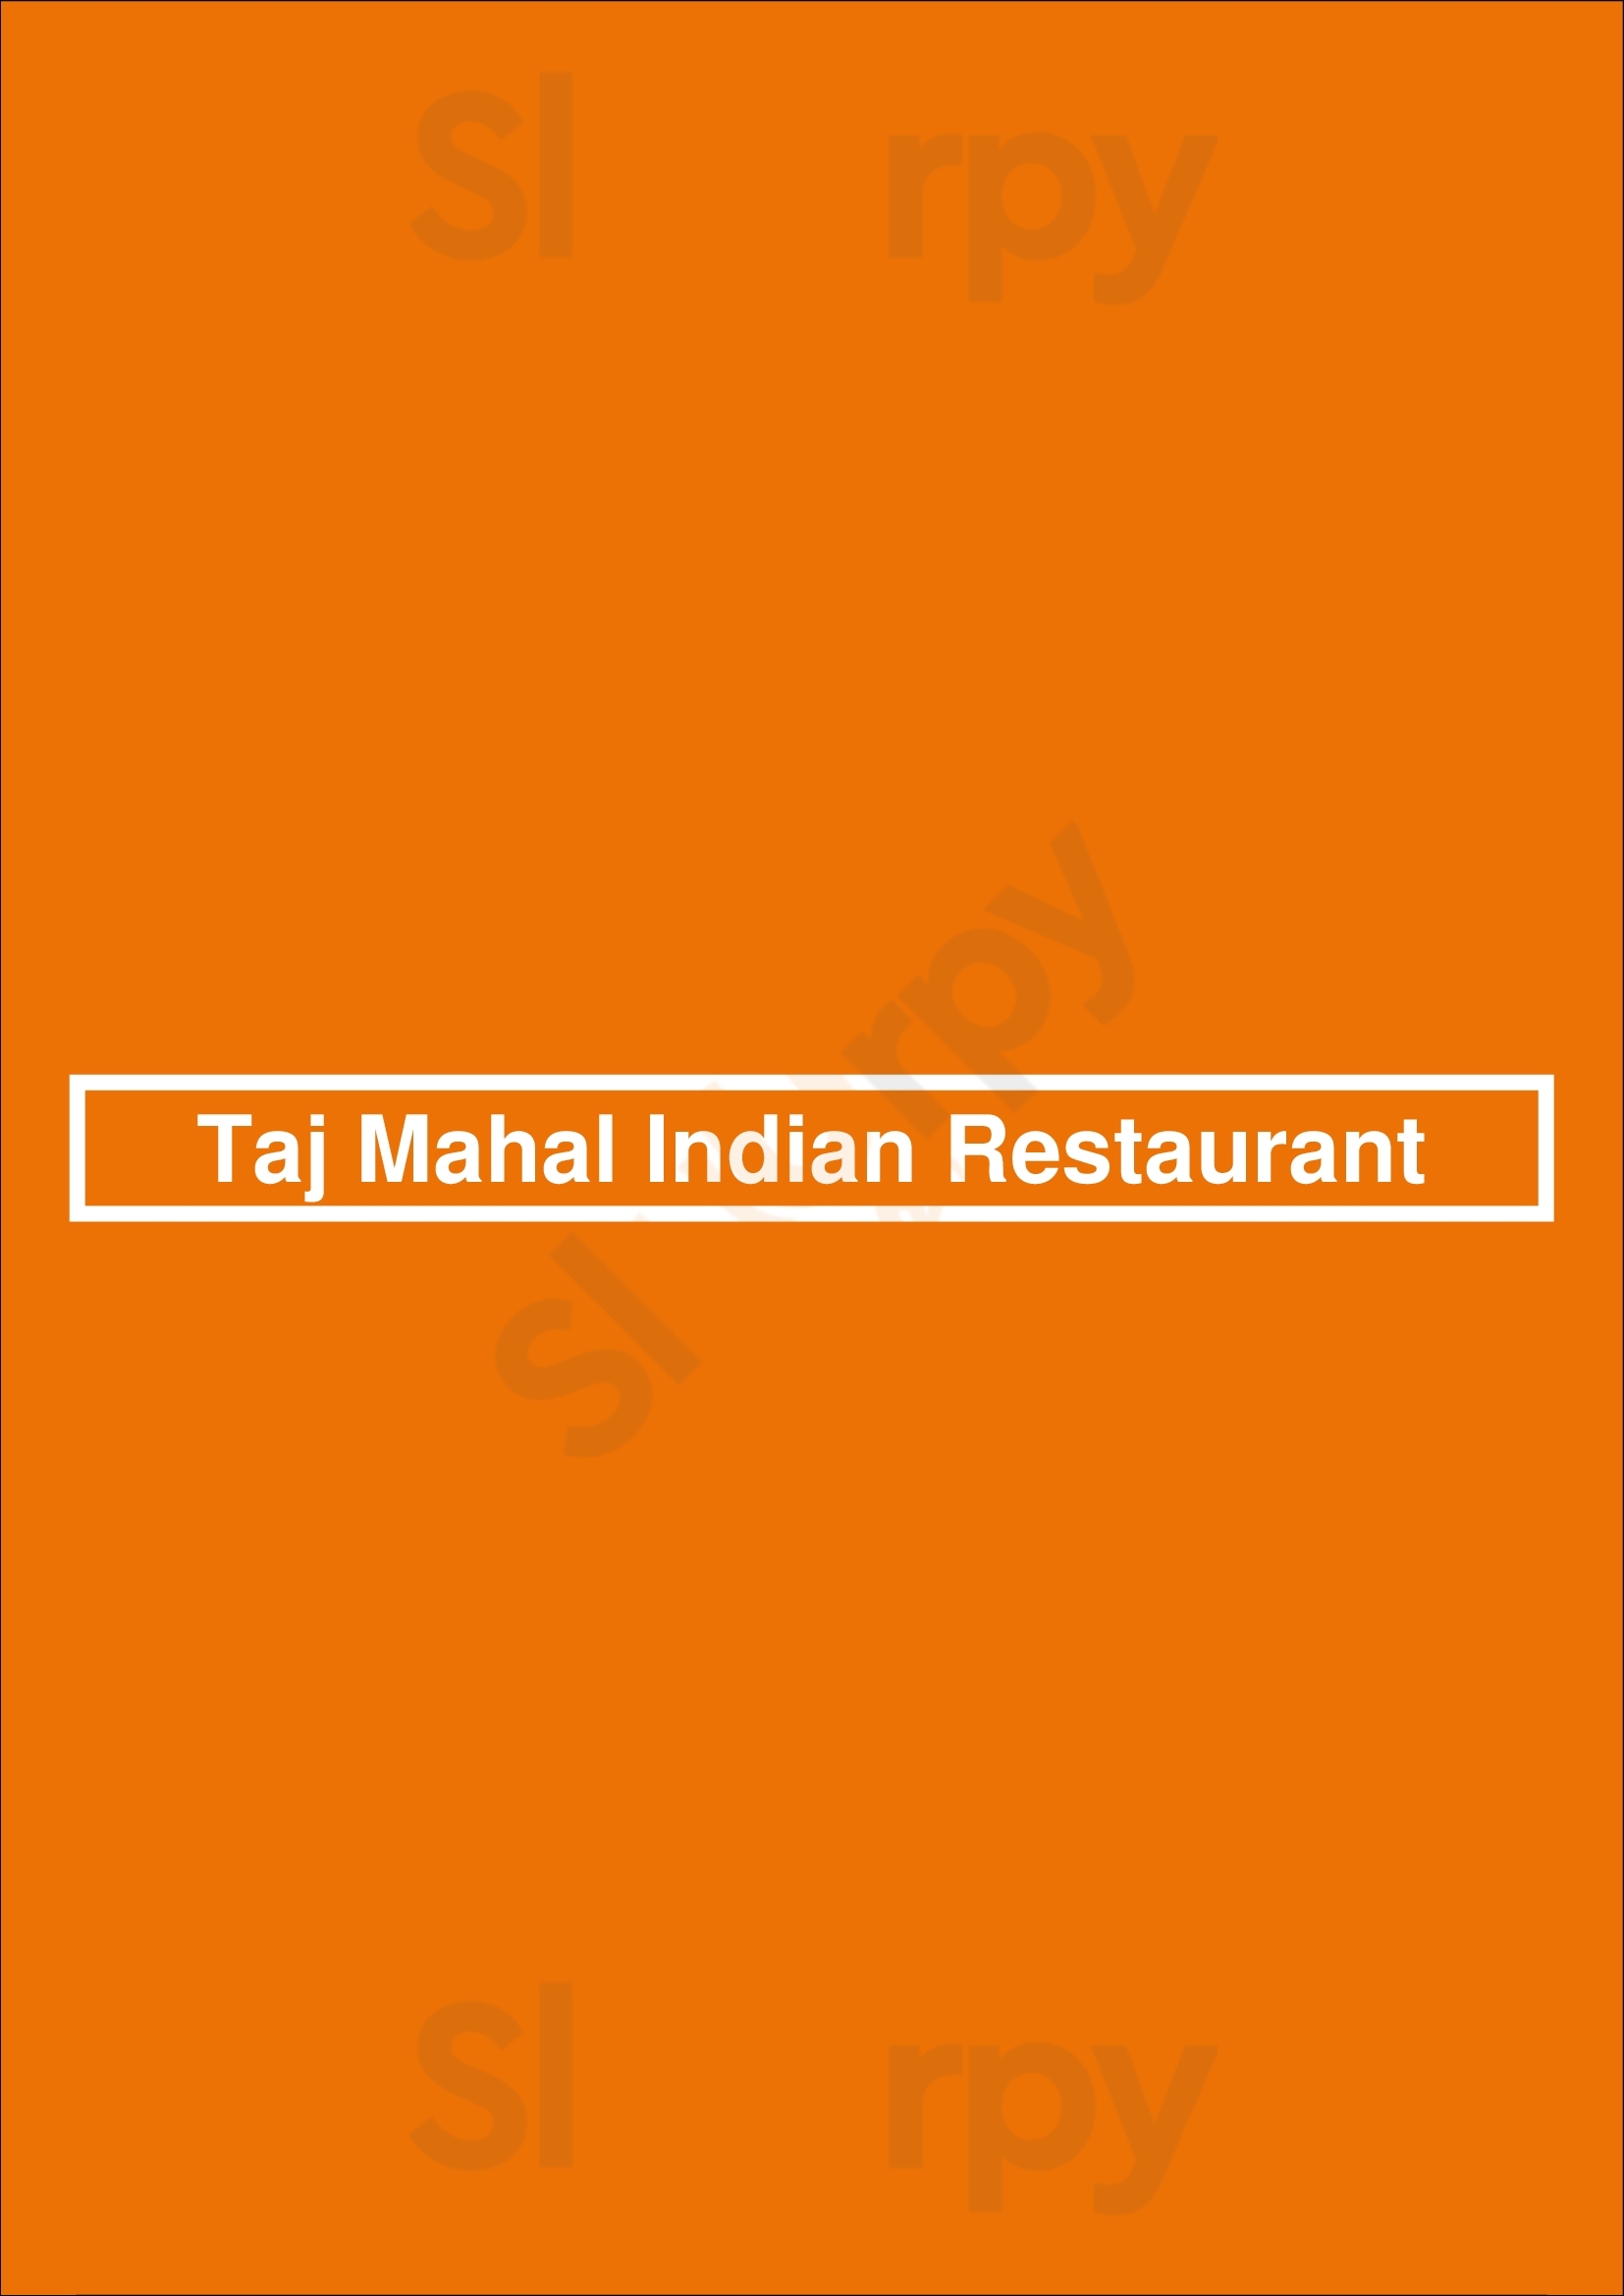 Taj Mahal Indian Restaurant & Bar Dallas Menu - 1